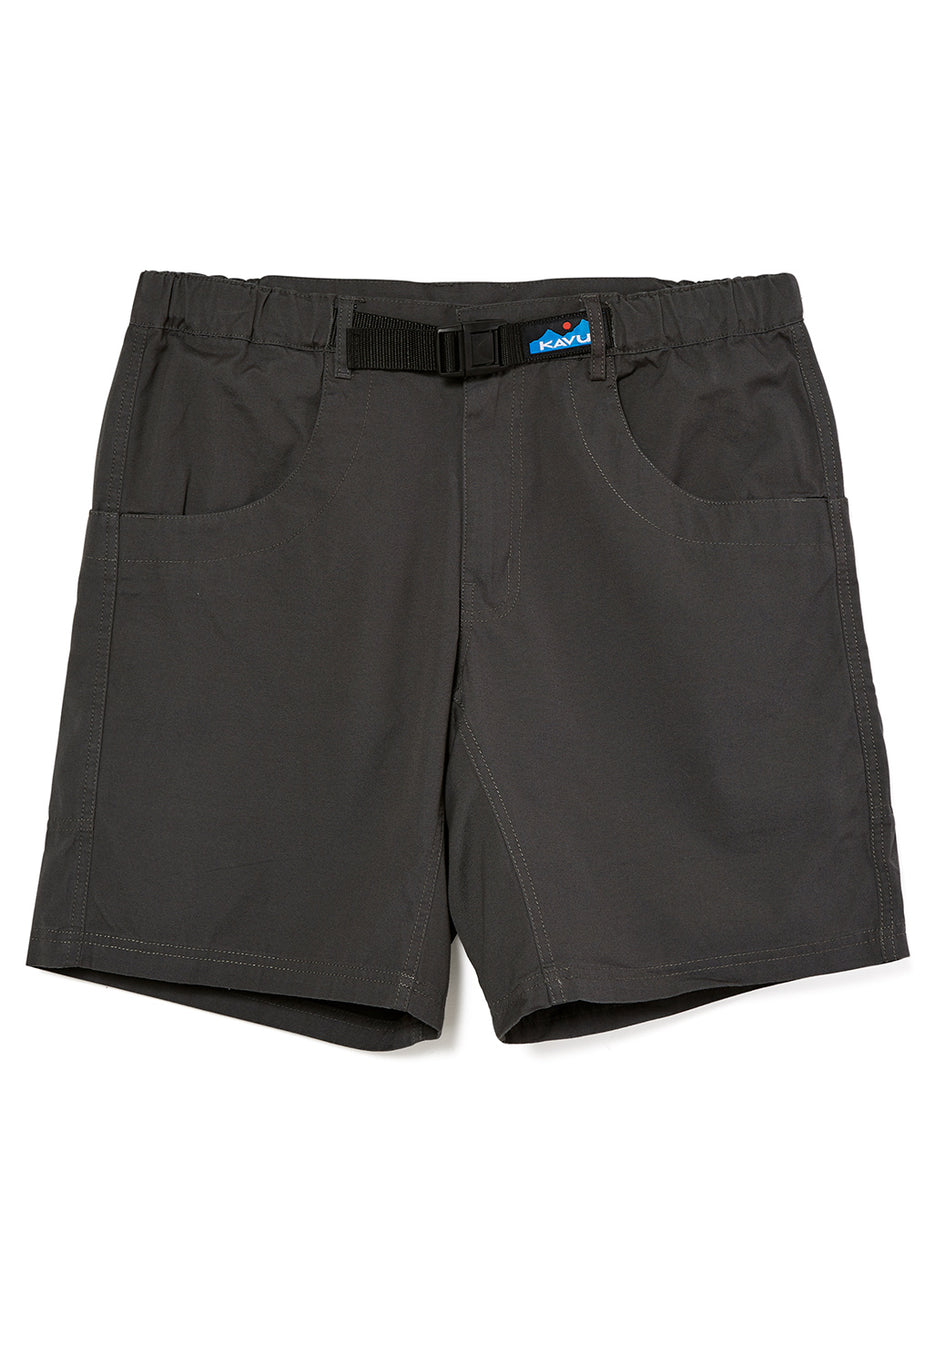 KAVU Men's Chilli Lite Shorts 19